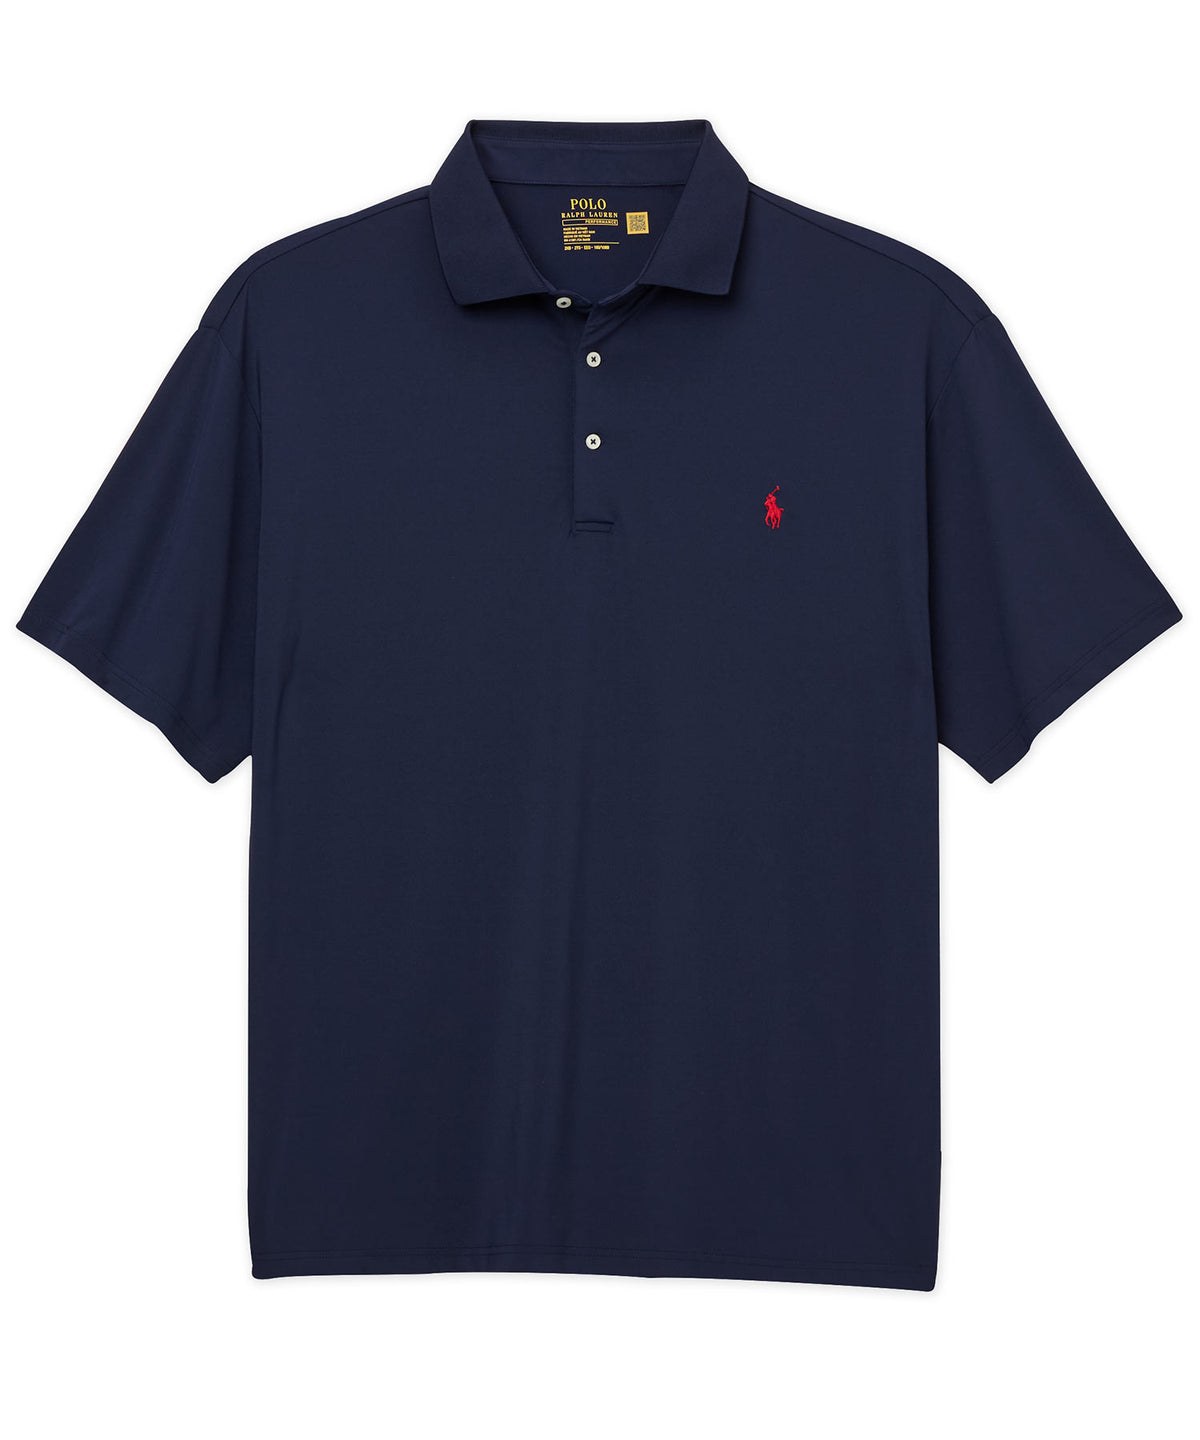 Polo Ralph Lauren Short Sleeve Performance Polo Knit Shirt, Men's Big & Tall